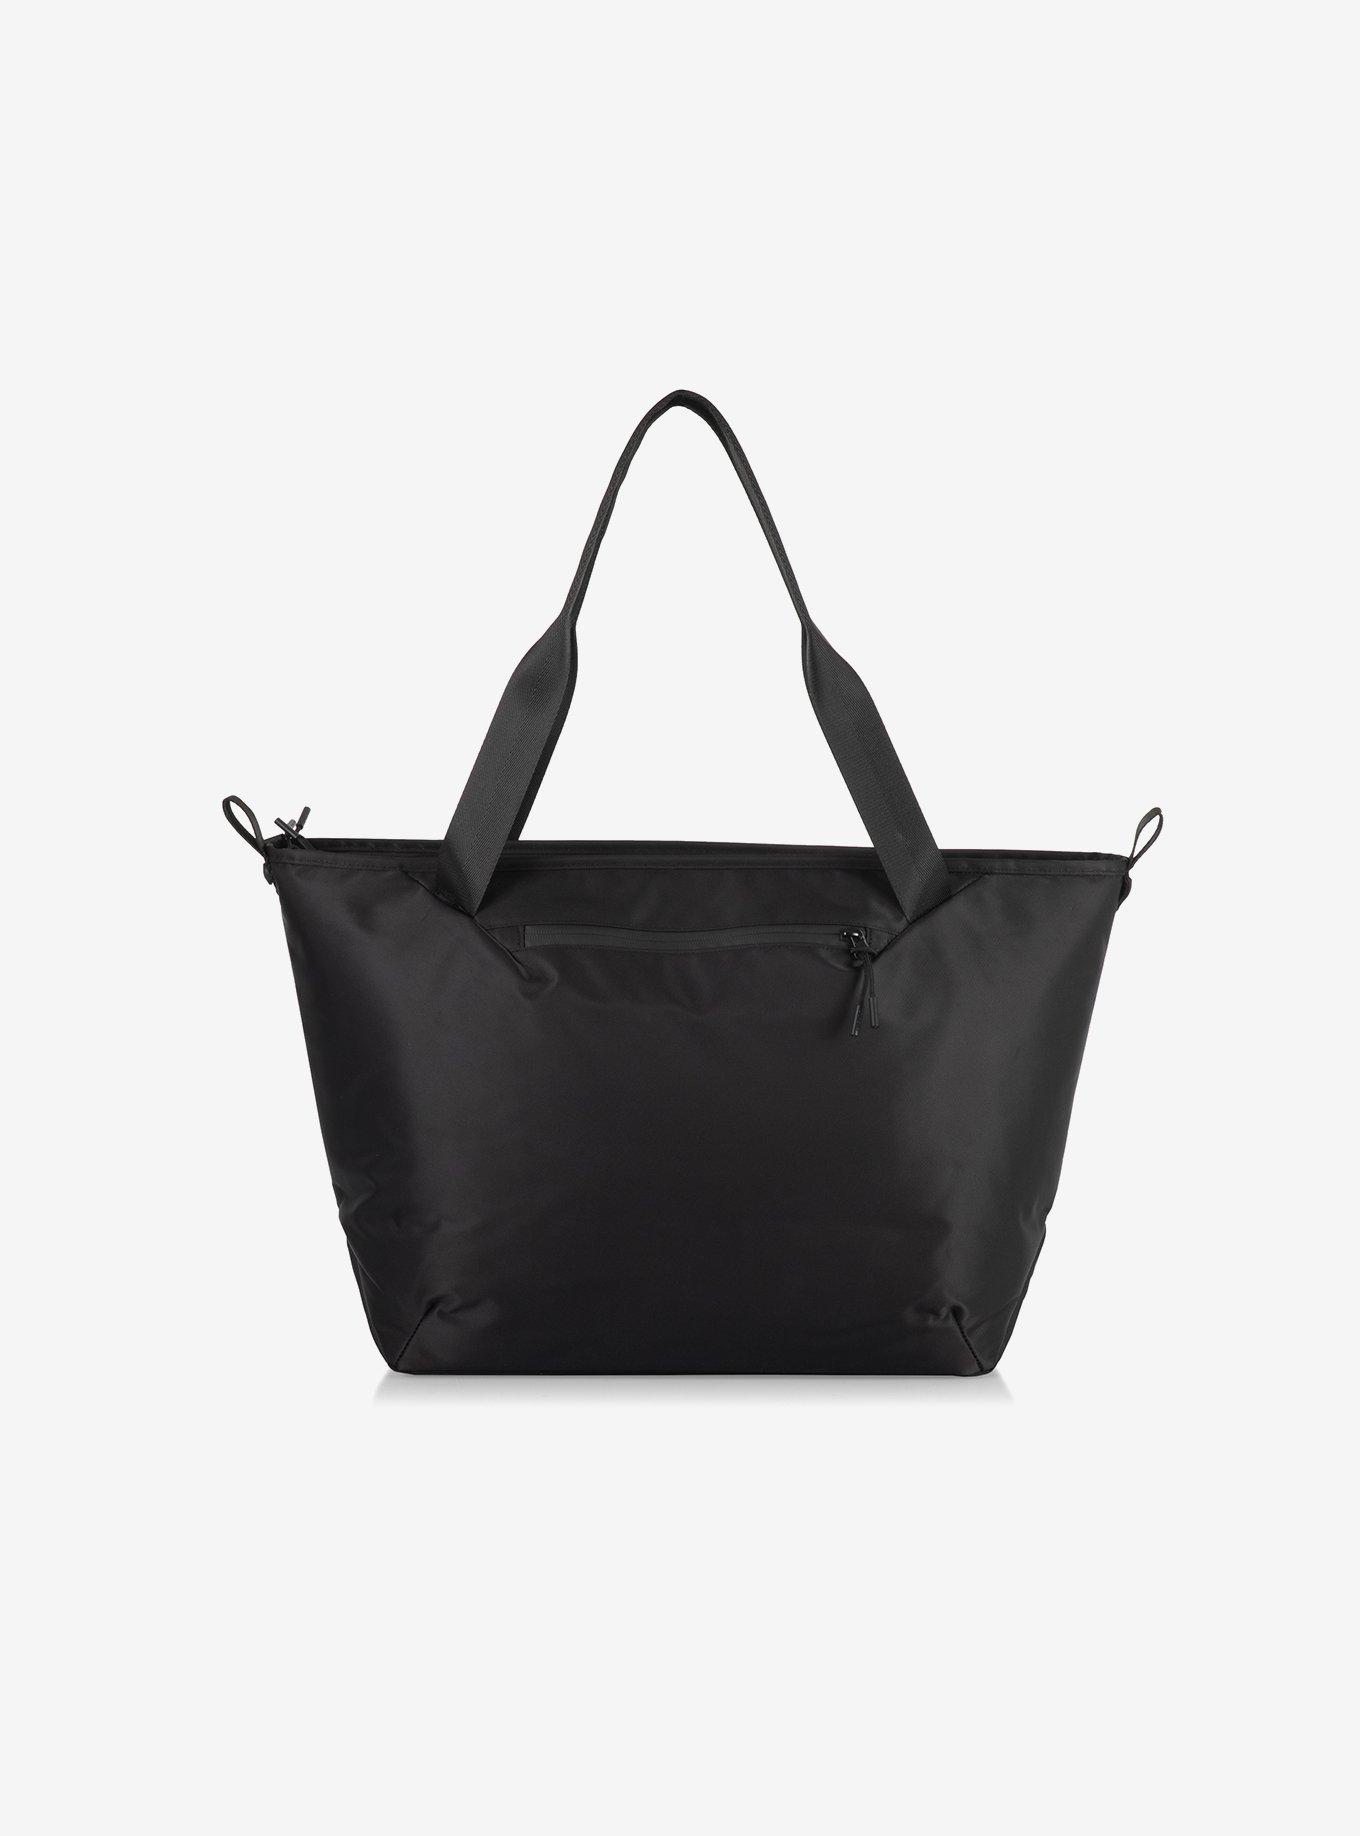 Tarana Carbon Black Cooler Bag Tote, , hi-res